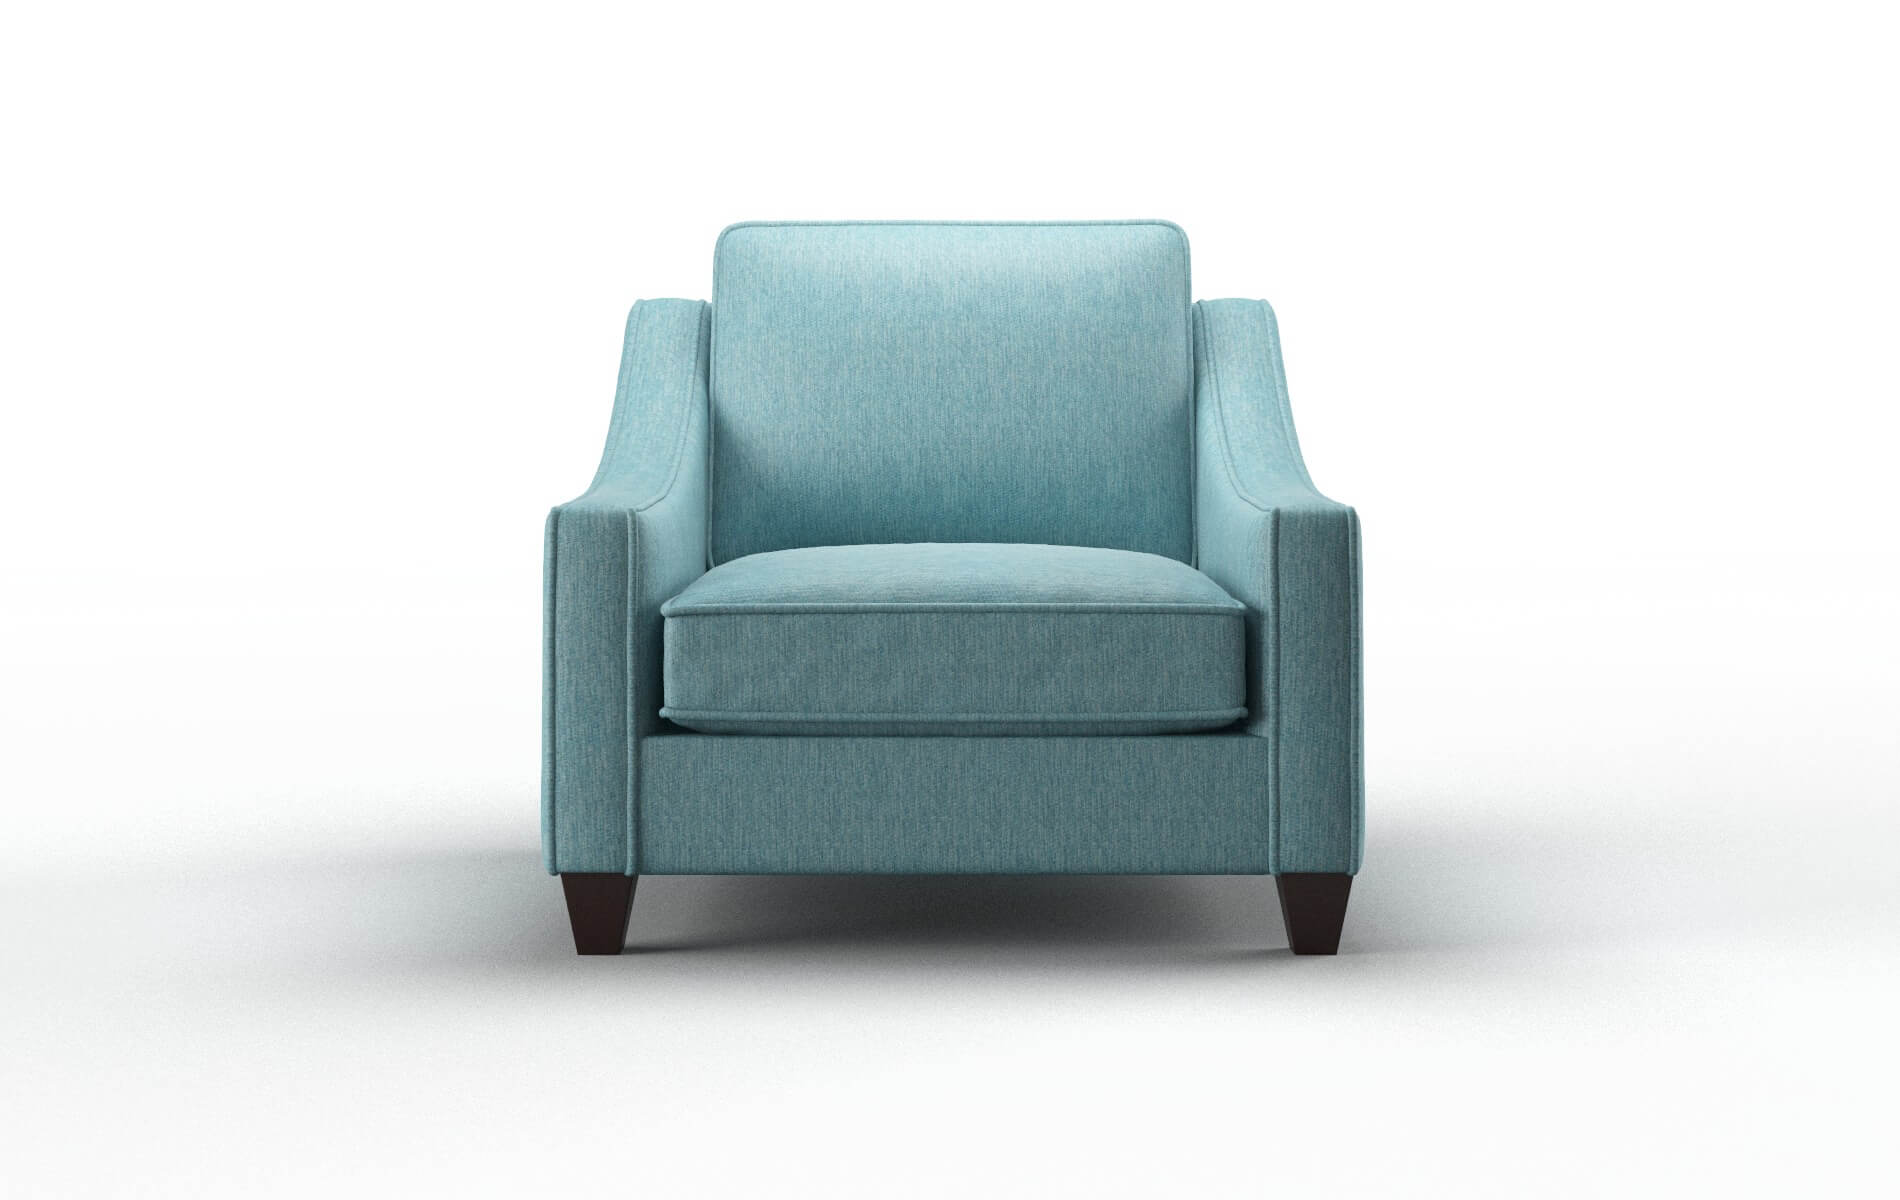 Sanda Cosmo Turquoise chair espresso legs